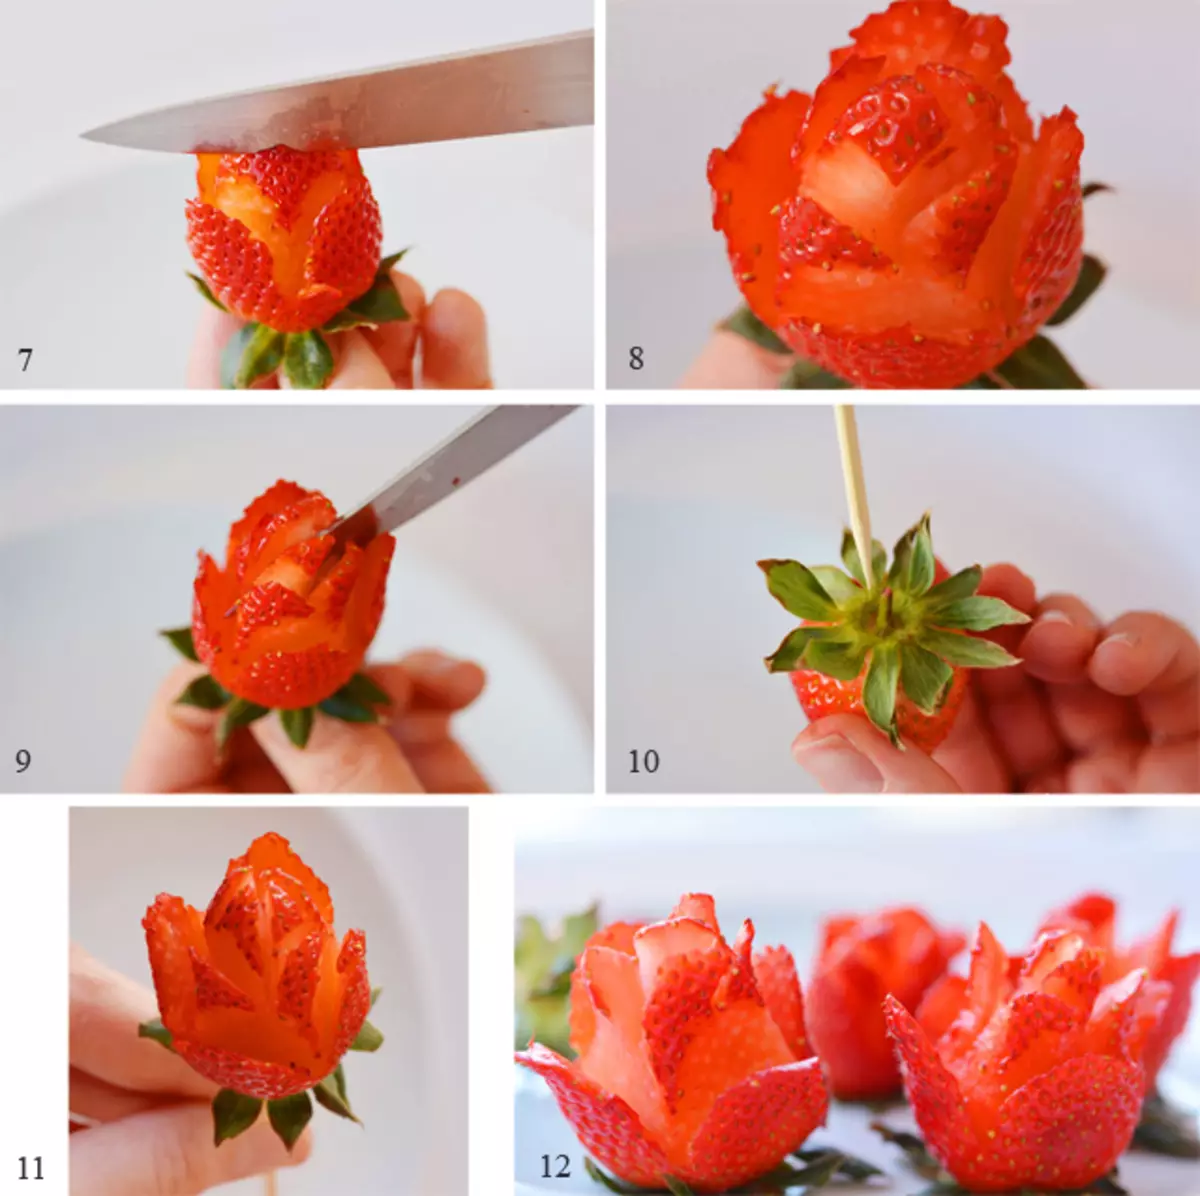 ផ្កានៃការ strawberry (36 រូបថត): របៀបដើម្បីធ្វើឱ្យ strawberry ក្នុងសូកូឡានៅក្នុងភួងនៃដៃរបស់អ្នកជាការបោះជំហានដោយជំហាន? តើធ្វើដូចម្តេចដើម្បីធ្វើឱ្យភួង strawberry មួយនៃ strawberries និងពណ៍? 26653_30